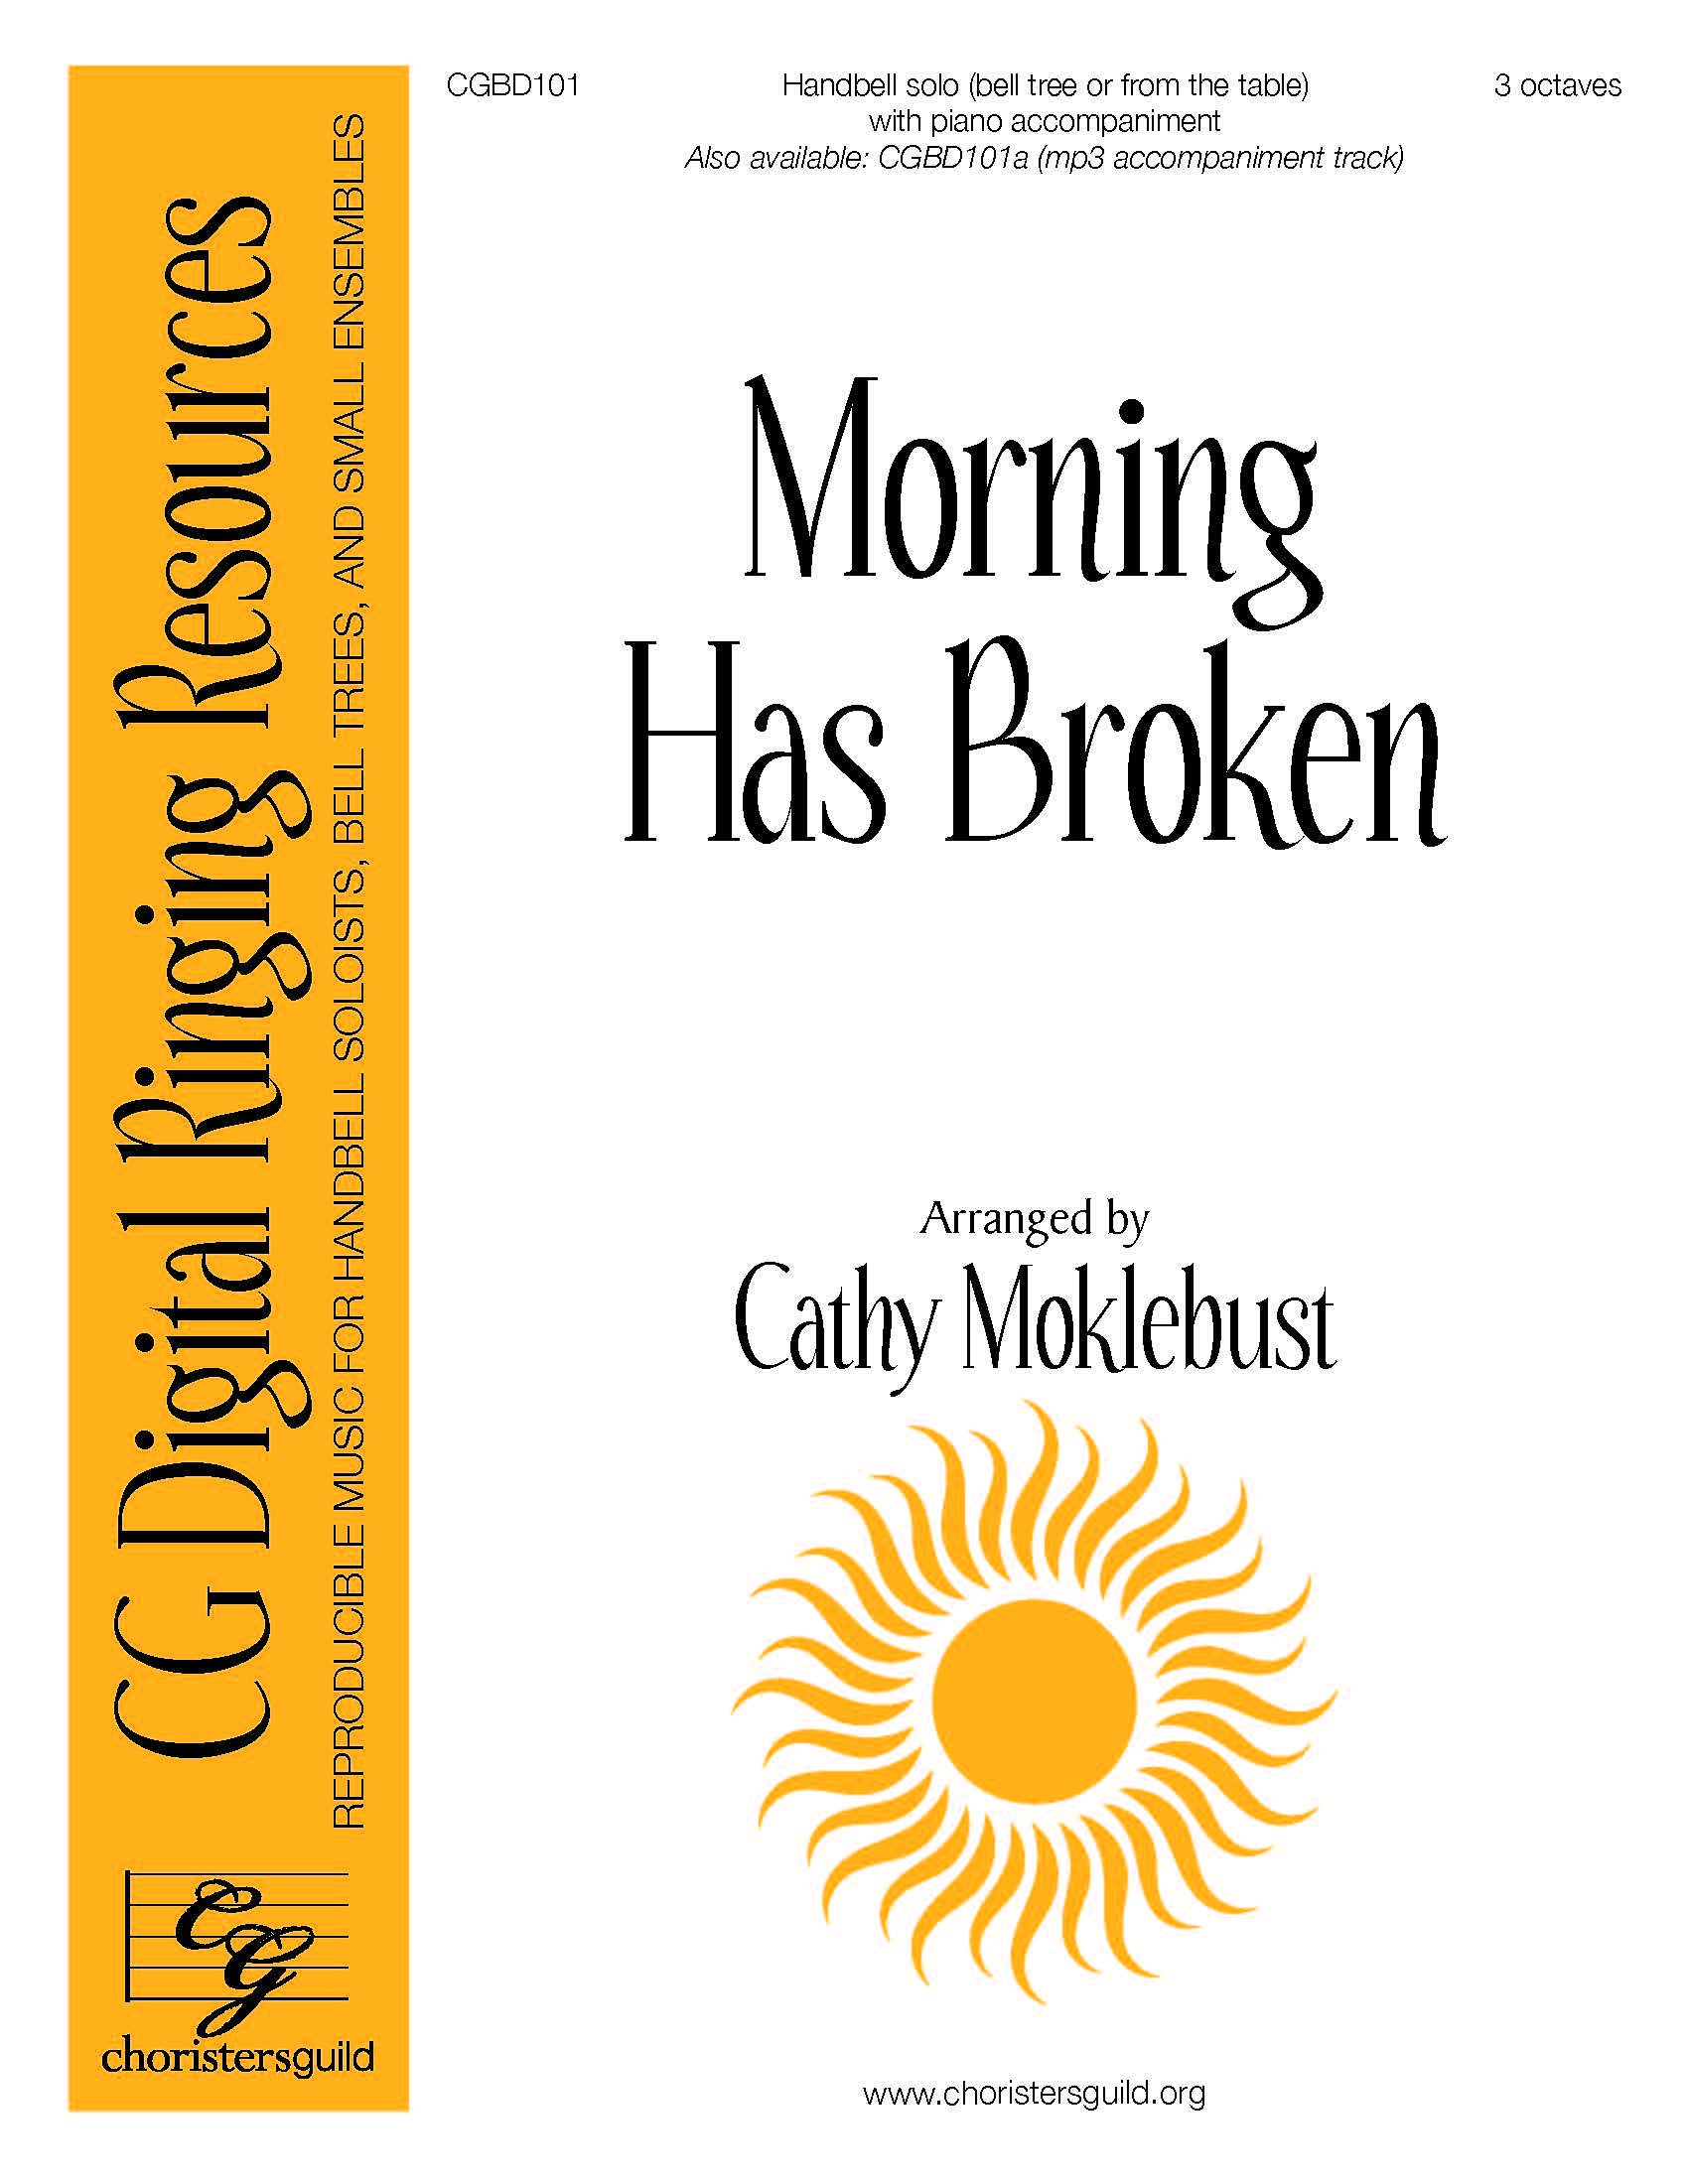 Morning Has Broken - Digital Accompaniment Track